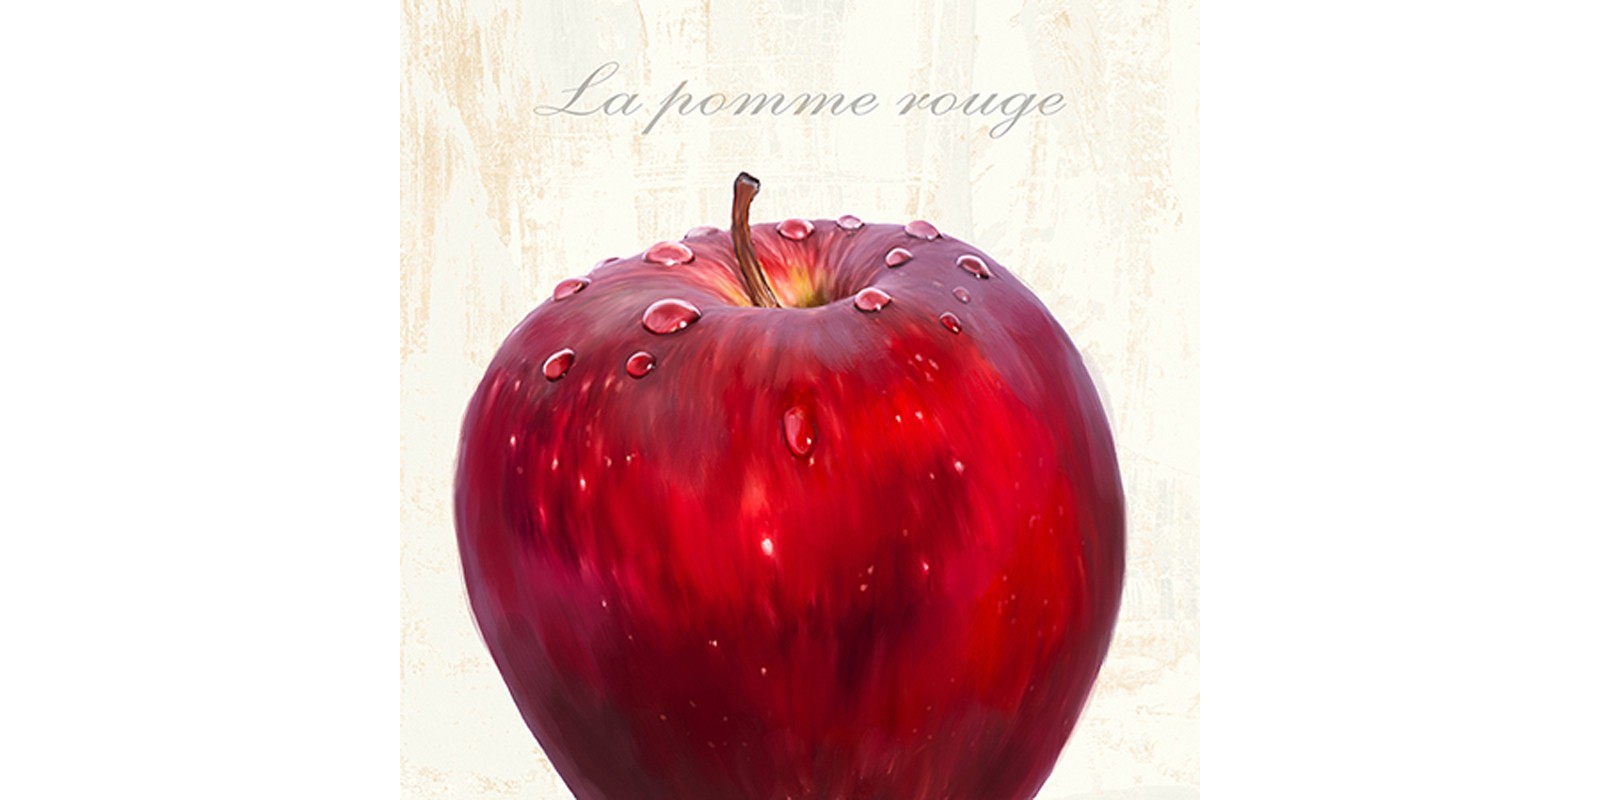 Remo Barbieri - La pomme rouge